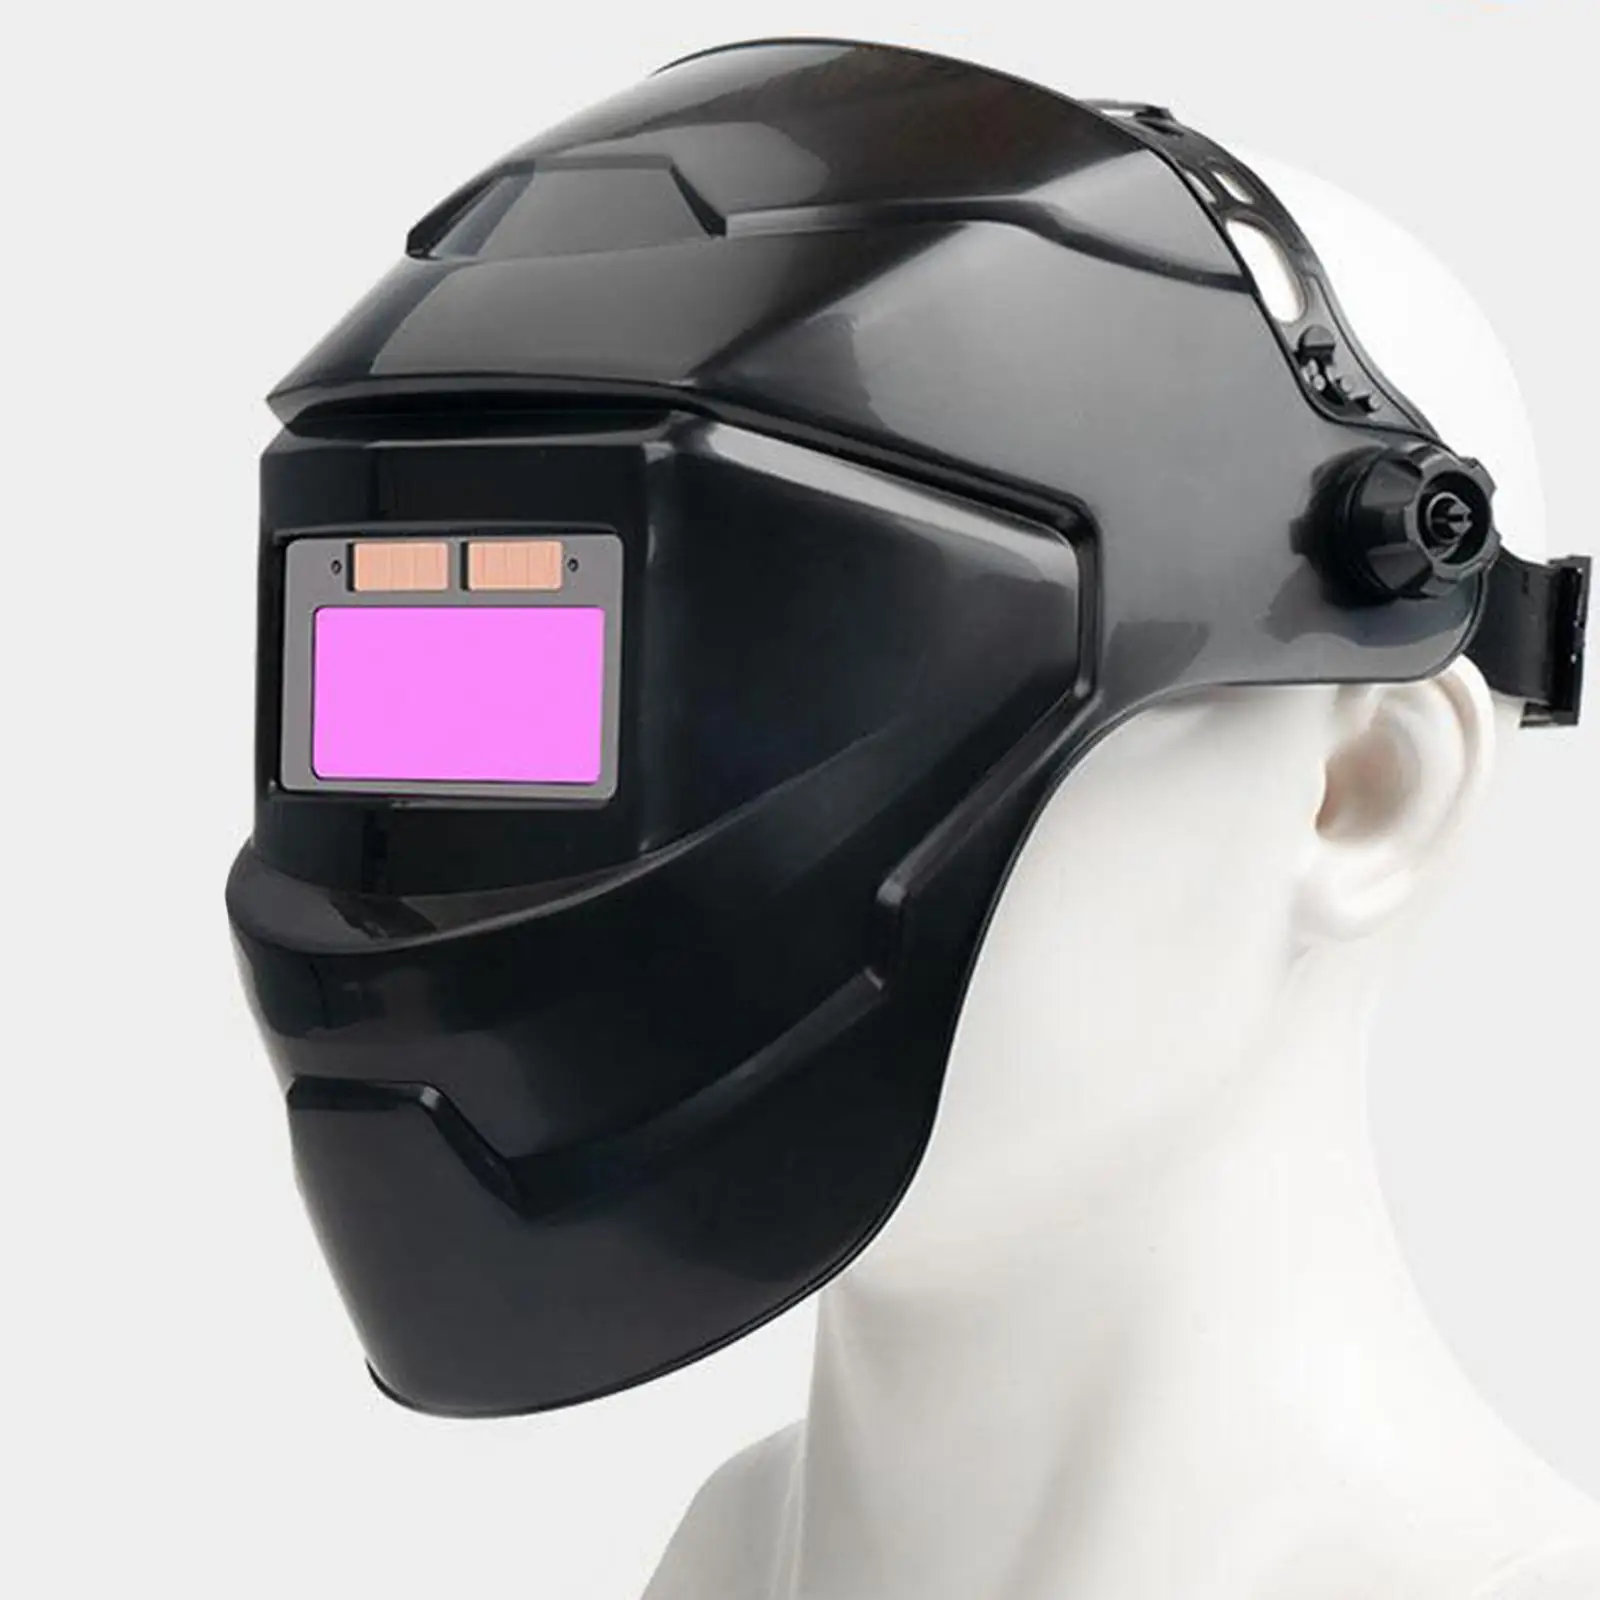 Solar Powered Auto Darkening Welding Helmet Adjustable for TIG MIG/ MMA Electric Welding